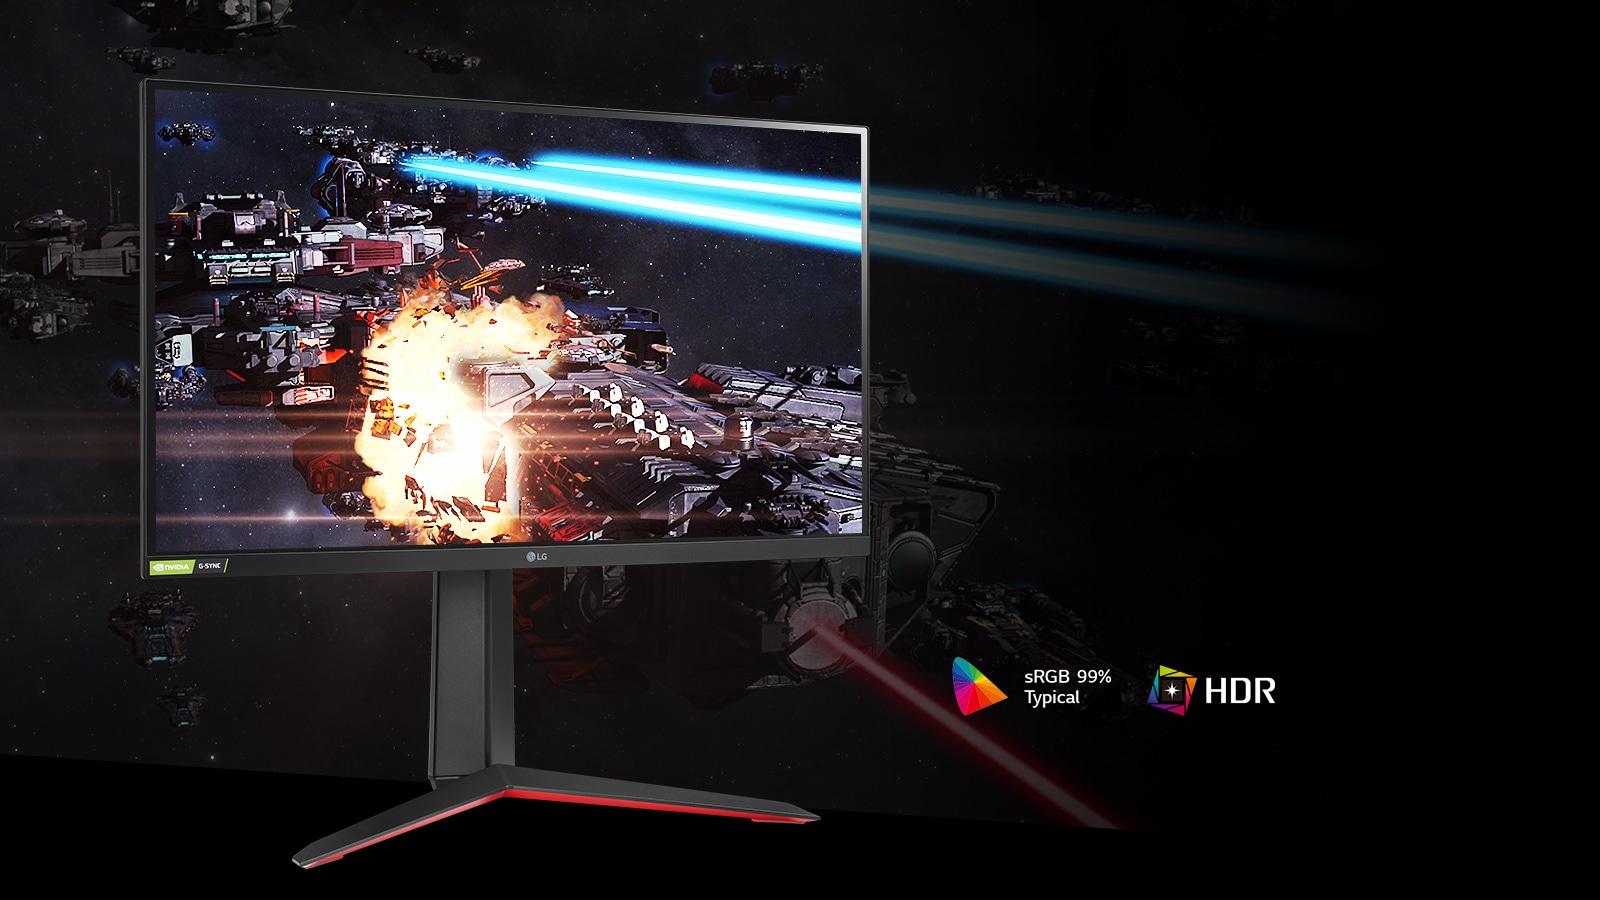 Игровая сцена с насыщенными цветами и контрастом на мониторе с поддержкой HDR10 и sRGB 99% (тип.).